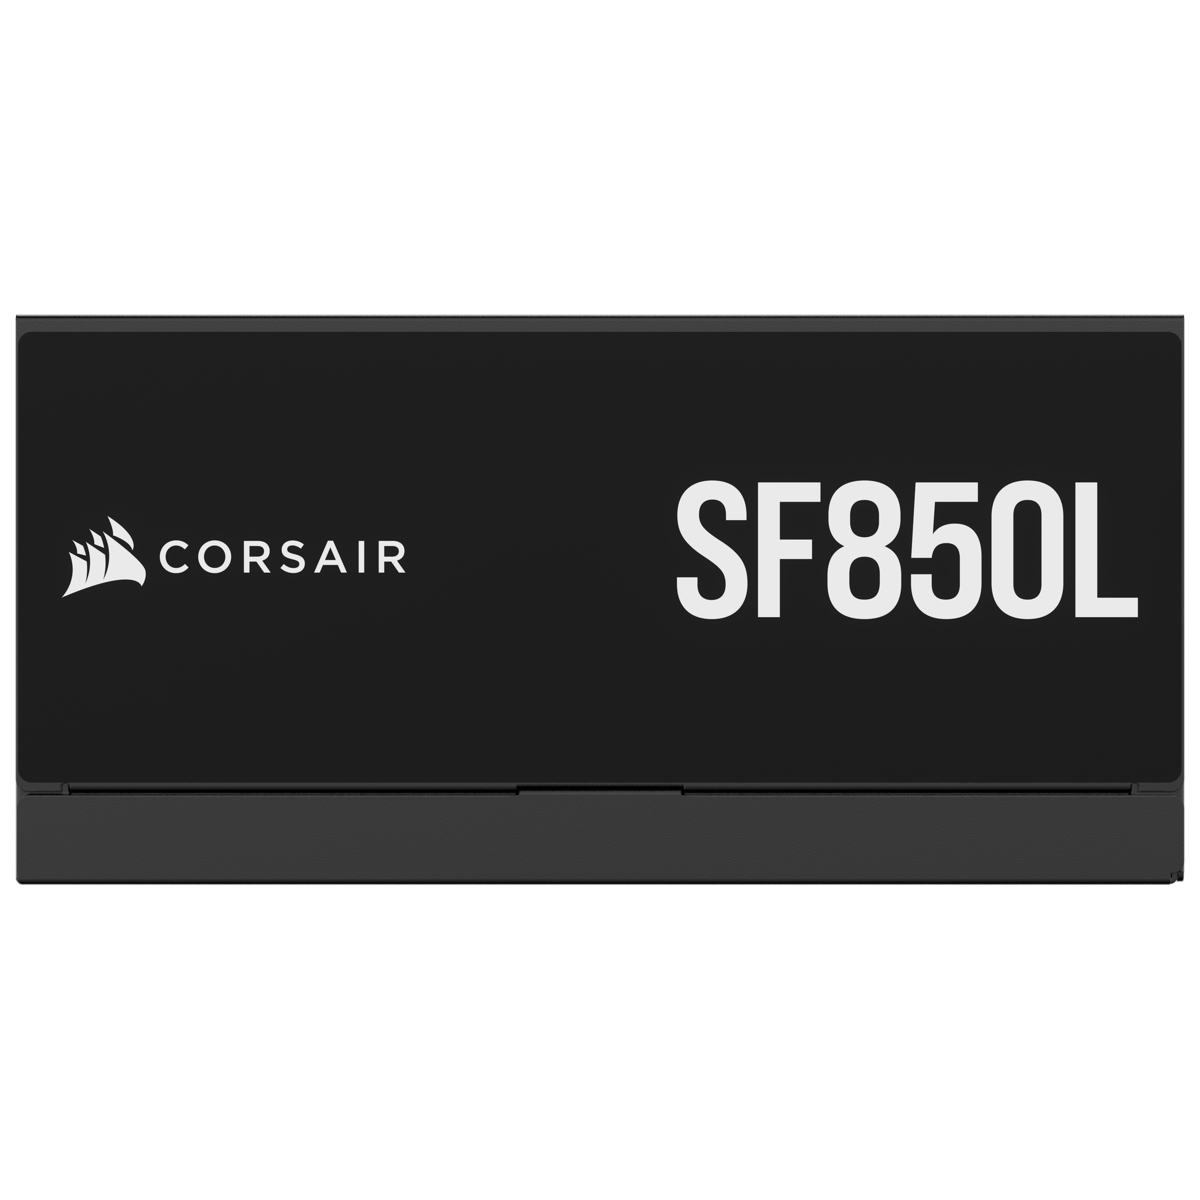 Corsair - Fuente Alimentación Modular SFX Corsair SF850L